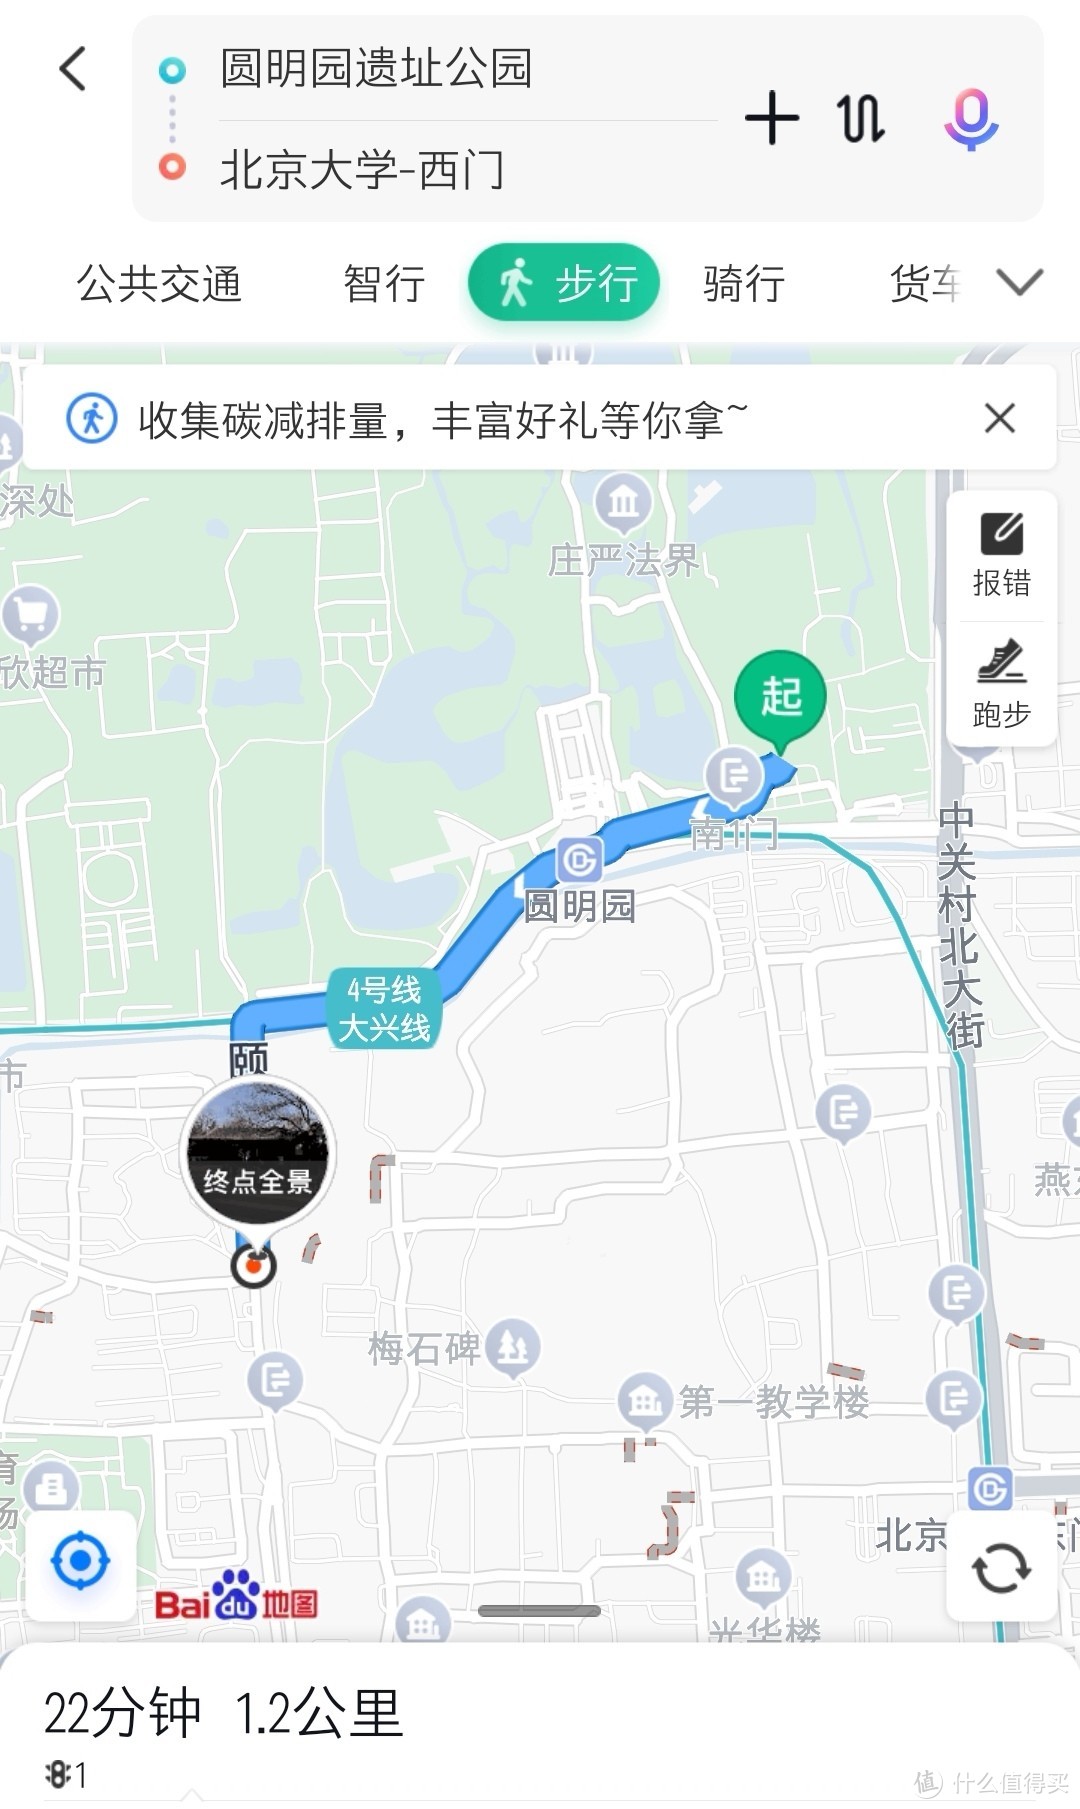 去北京大学西门的参考路线